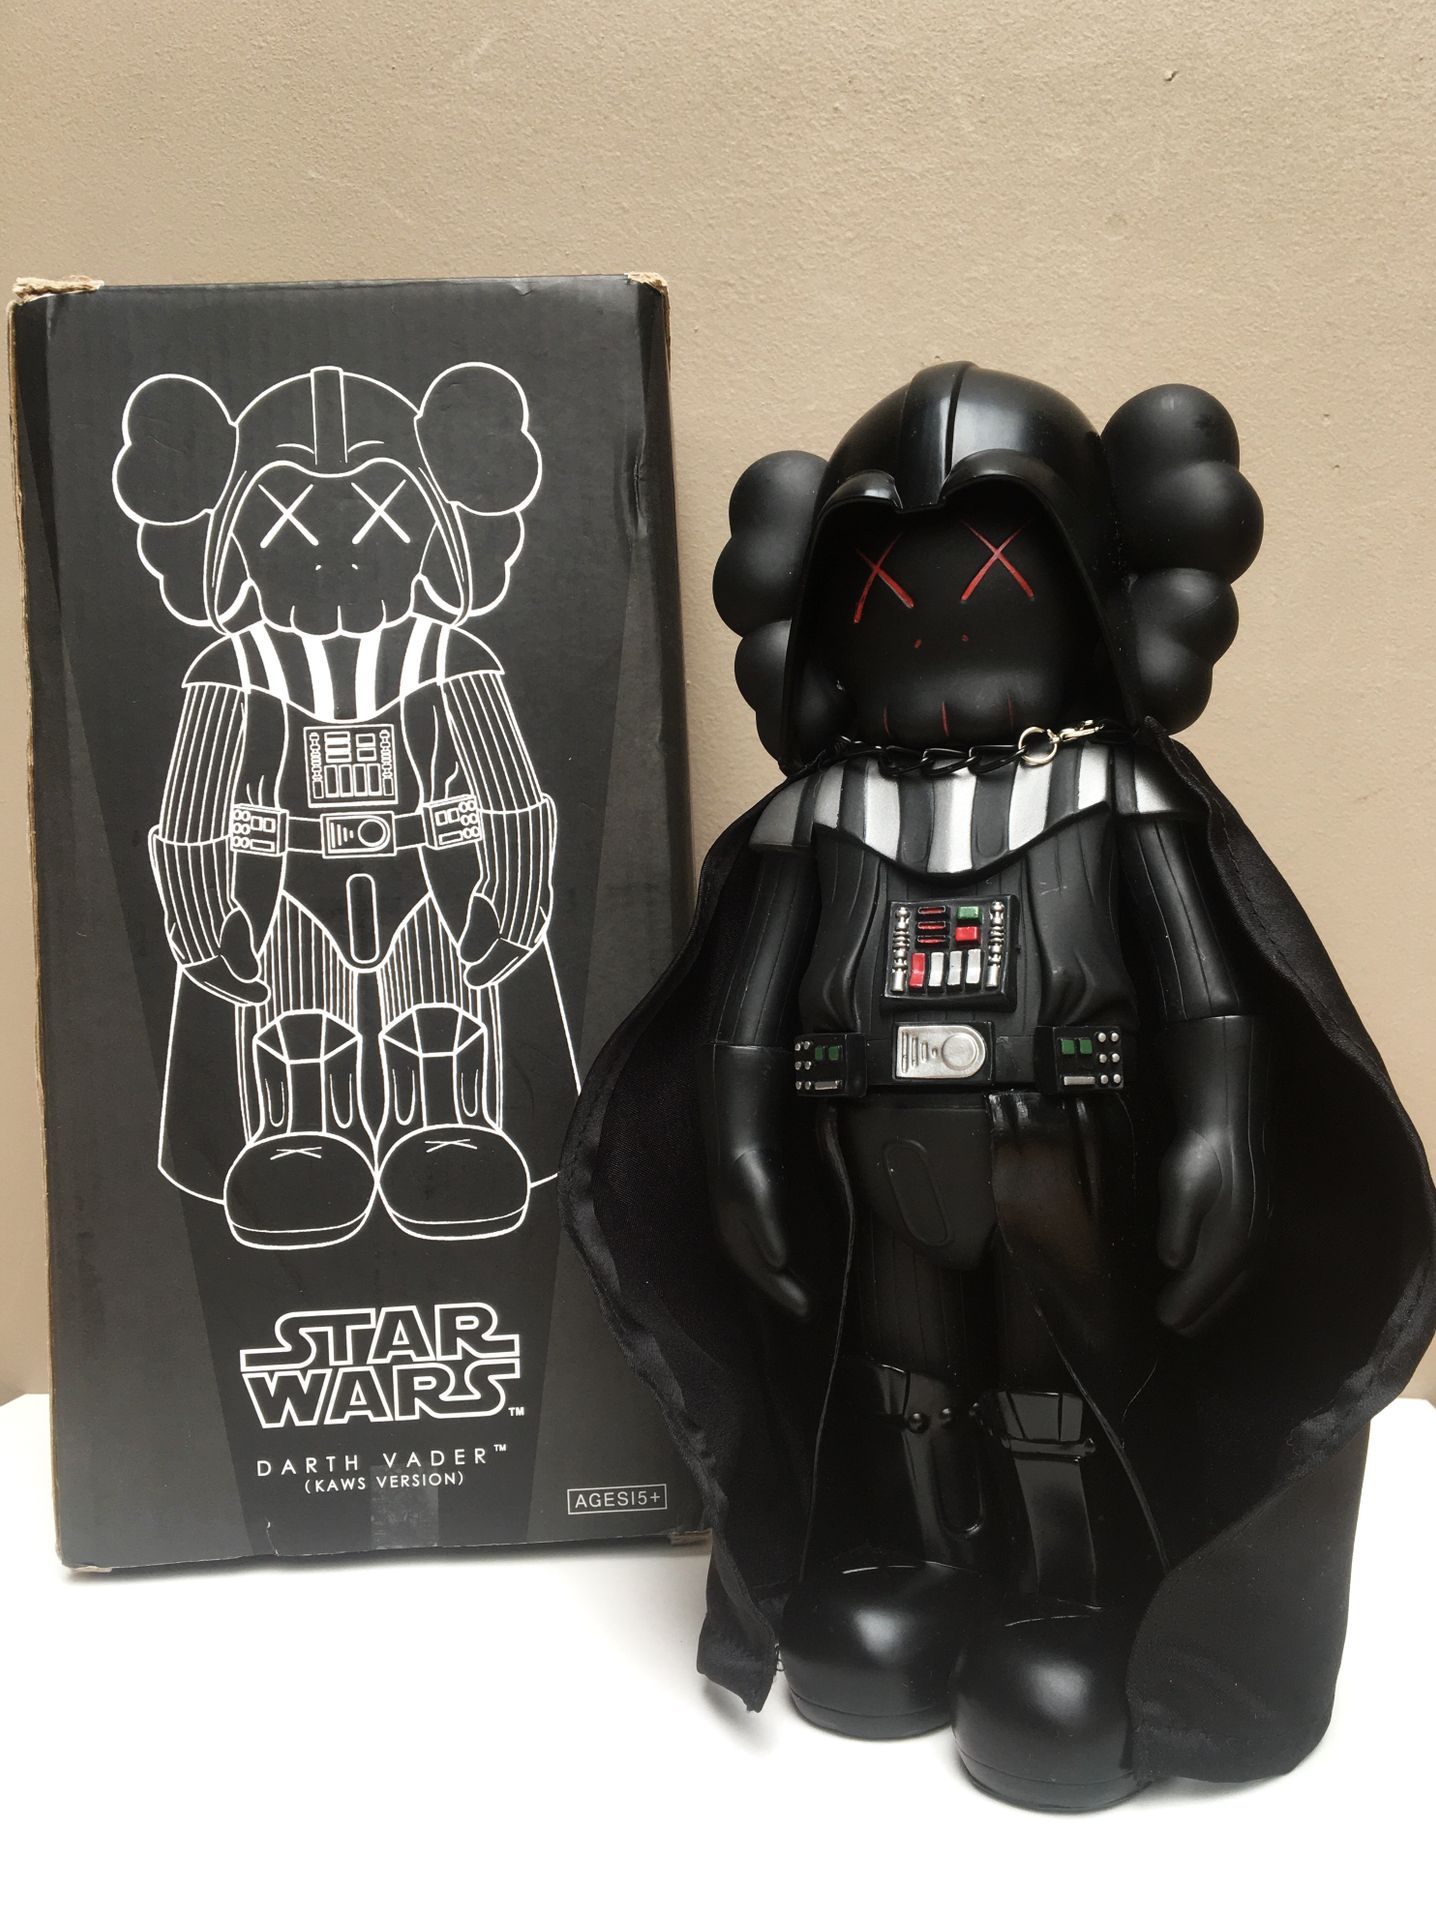 KAWS Star Wars - Darth Vader 2013. Tamaño 11x26x6 cm. Diseñado por Kaws y Medico&hellip;